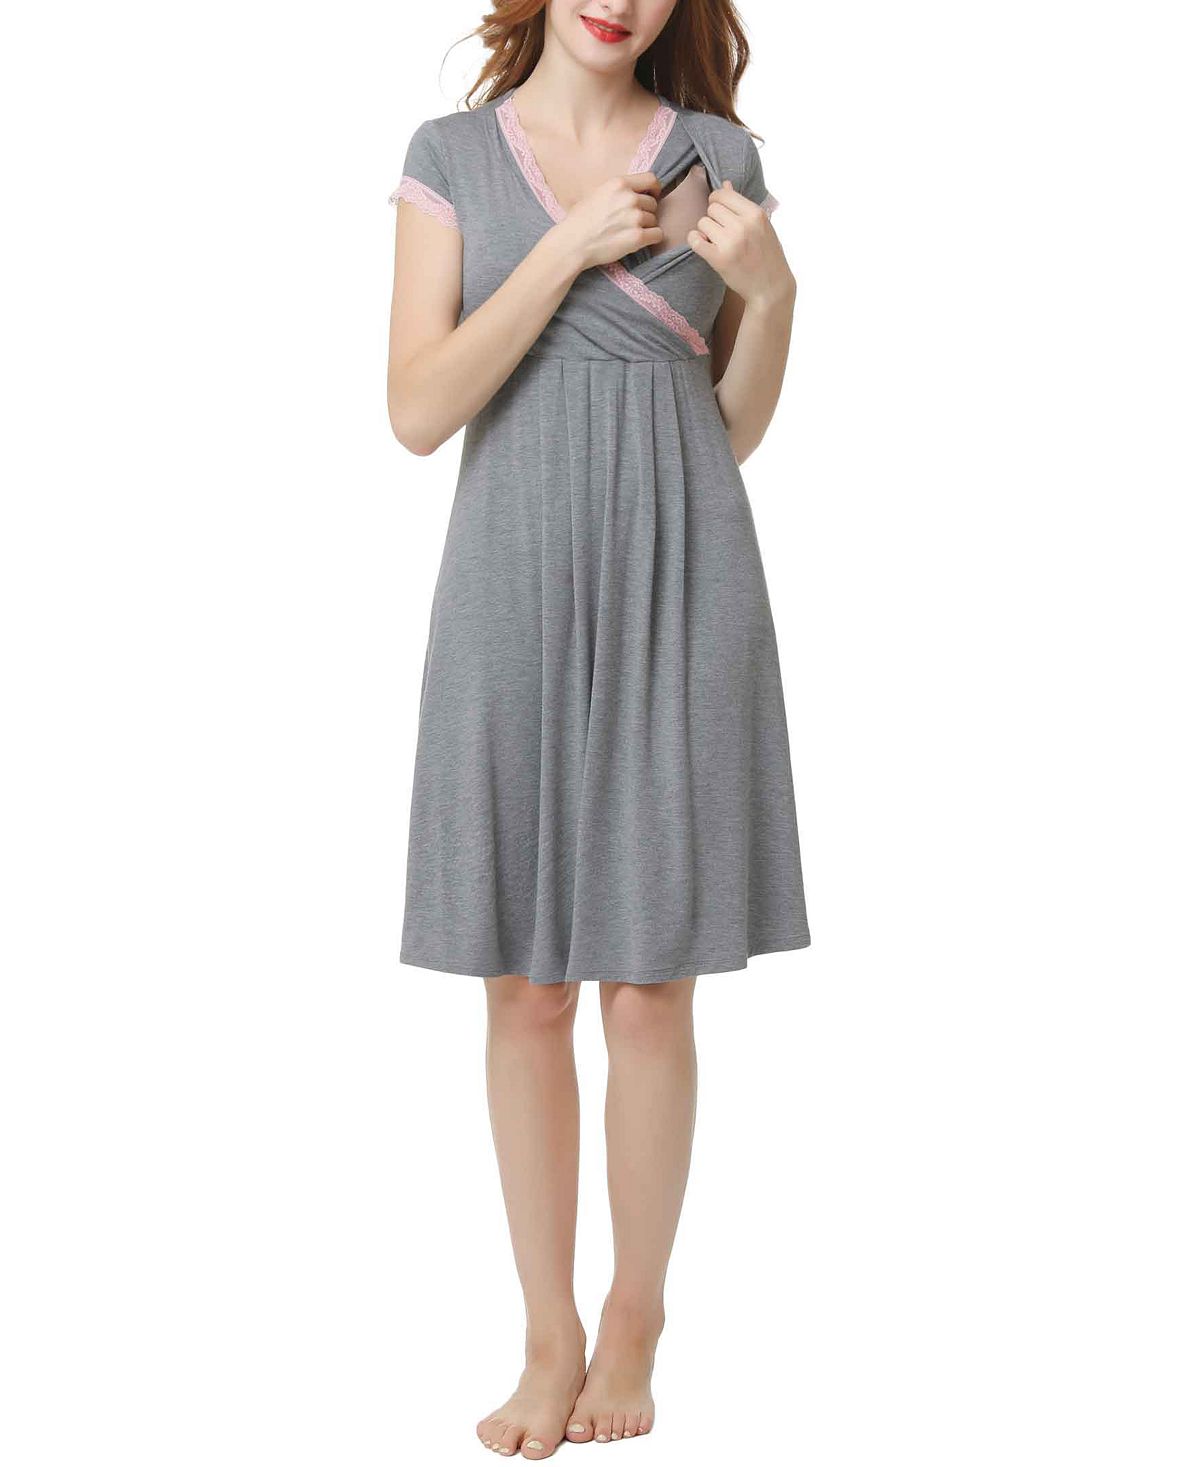 Ночная рубашка для беременных и кормящих мам kimi & kai jenny kimi + kai, серый ночная рубашка для беременных кормящих и amp комплект халатов accouchée цвет gray